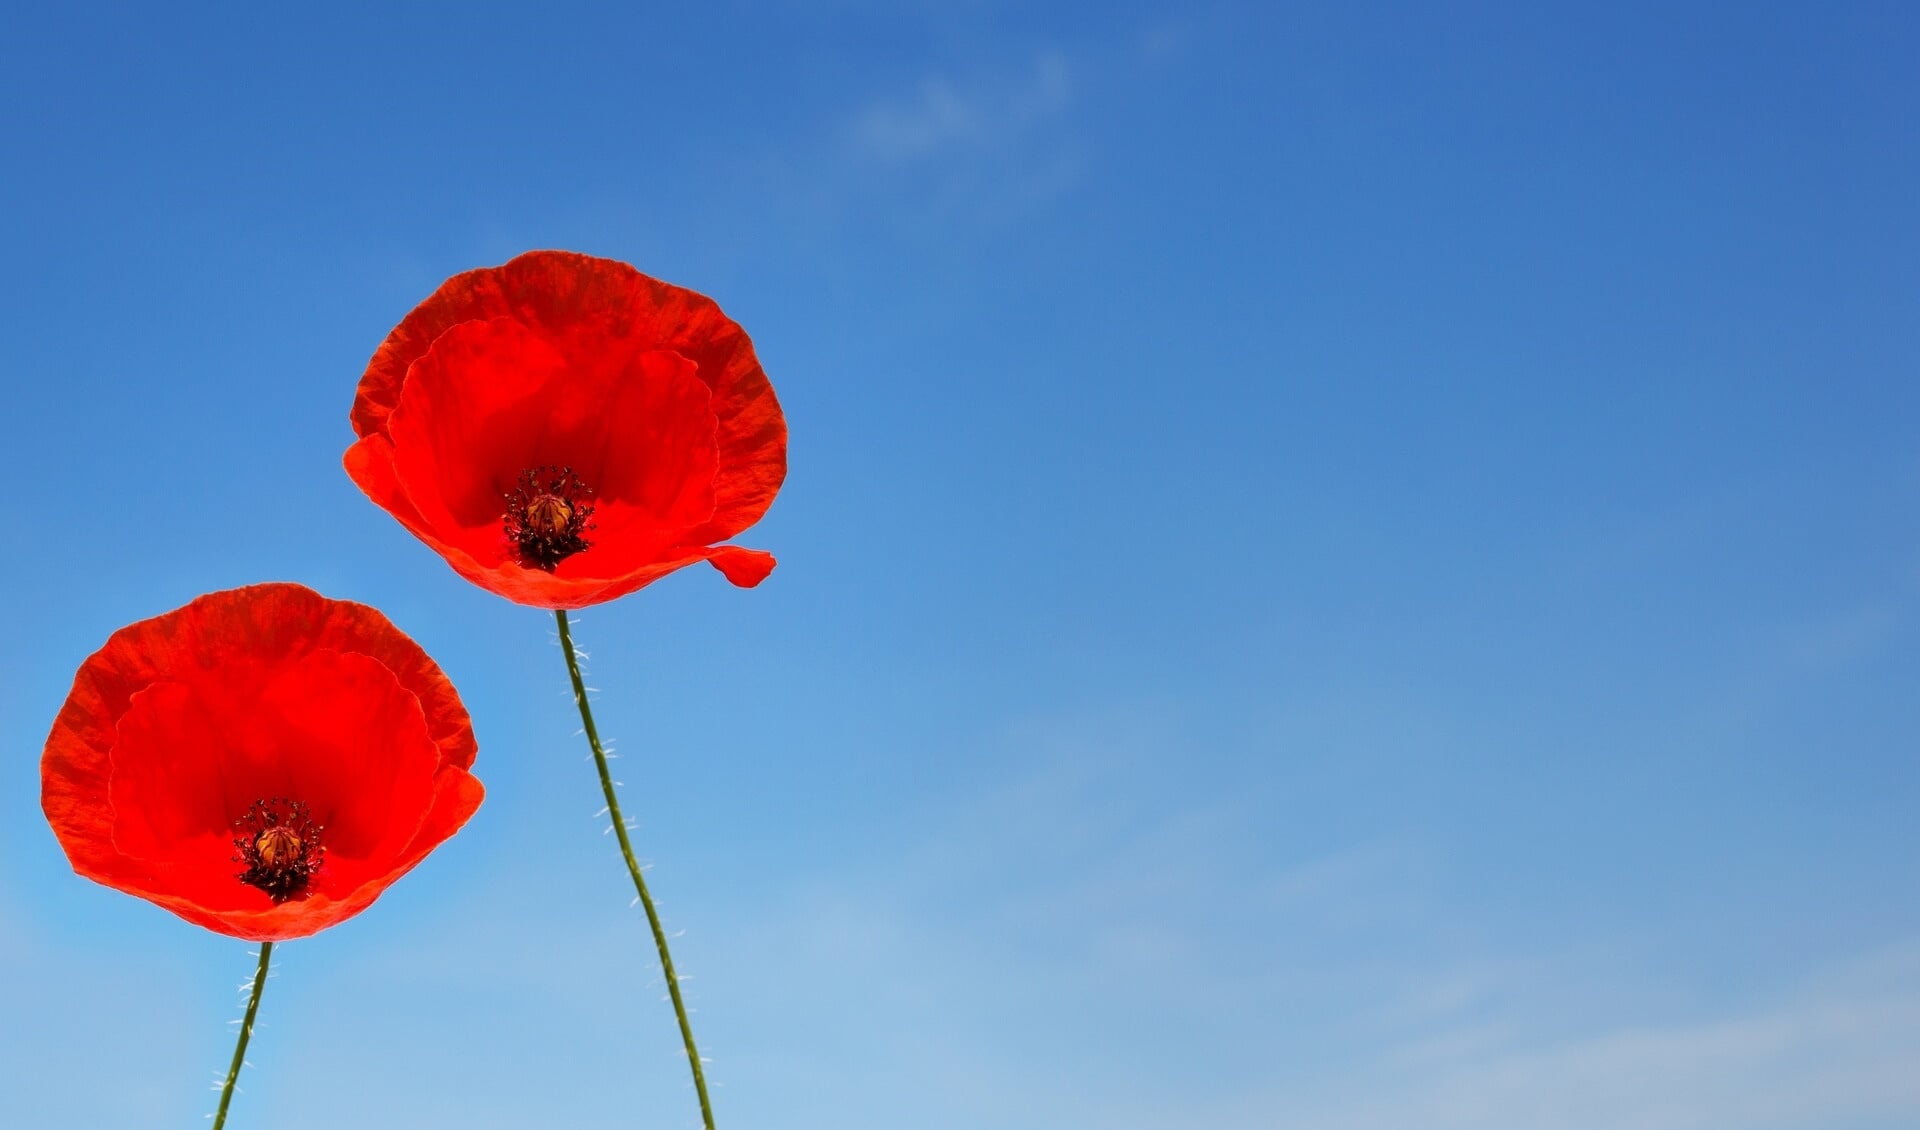 De dag wordt officieel ‘Remembrance Day’ genoemd. In de volksmond spreekt men ook wel van “Poppy Day”. De klaproos – poppy - is het symbool. 